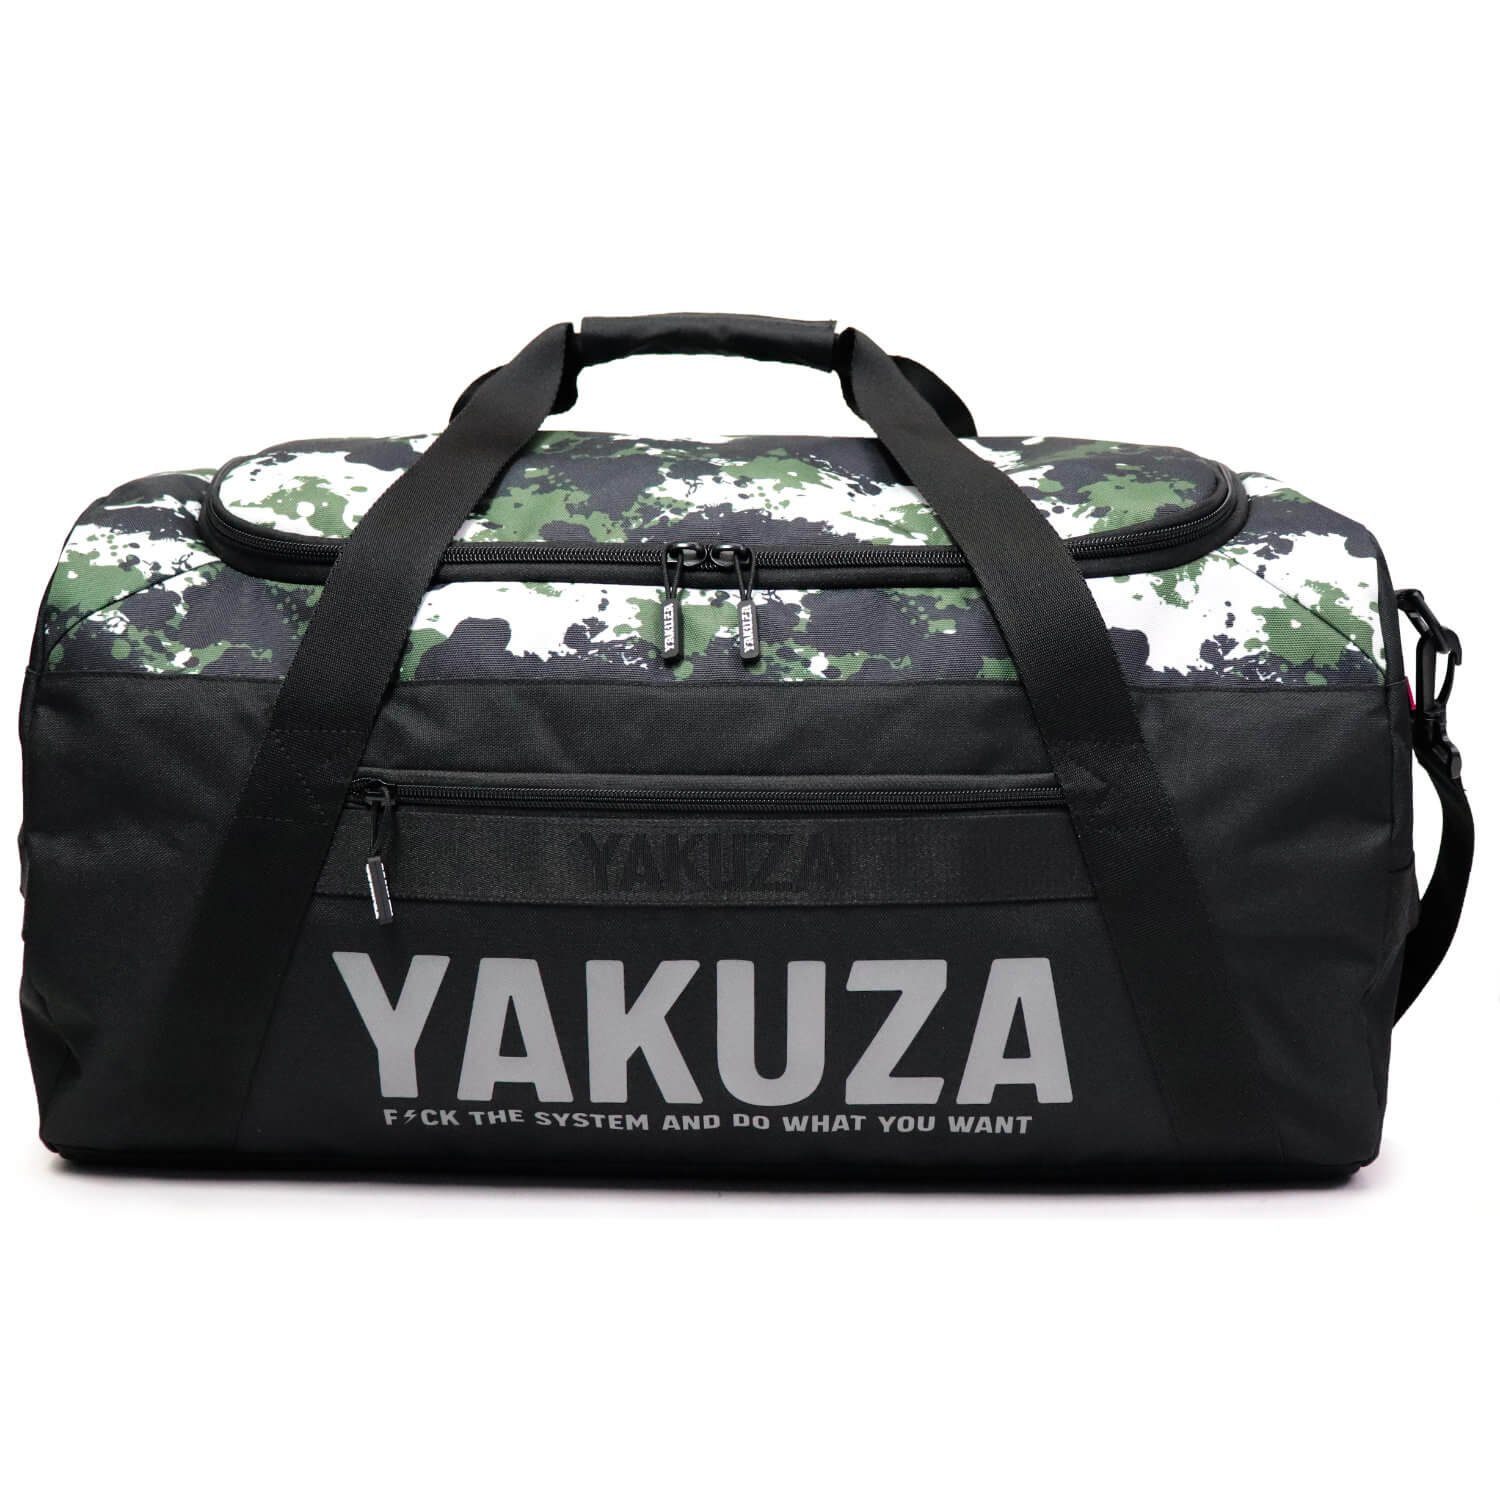 YAKUZA Sporttasche YAKUZA Tweak Weekender Sporttasche schwarz/camouflage, mit geräumigem Hauptfach